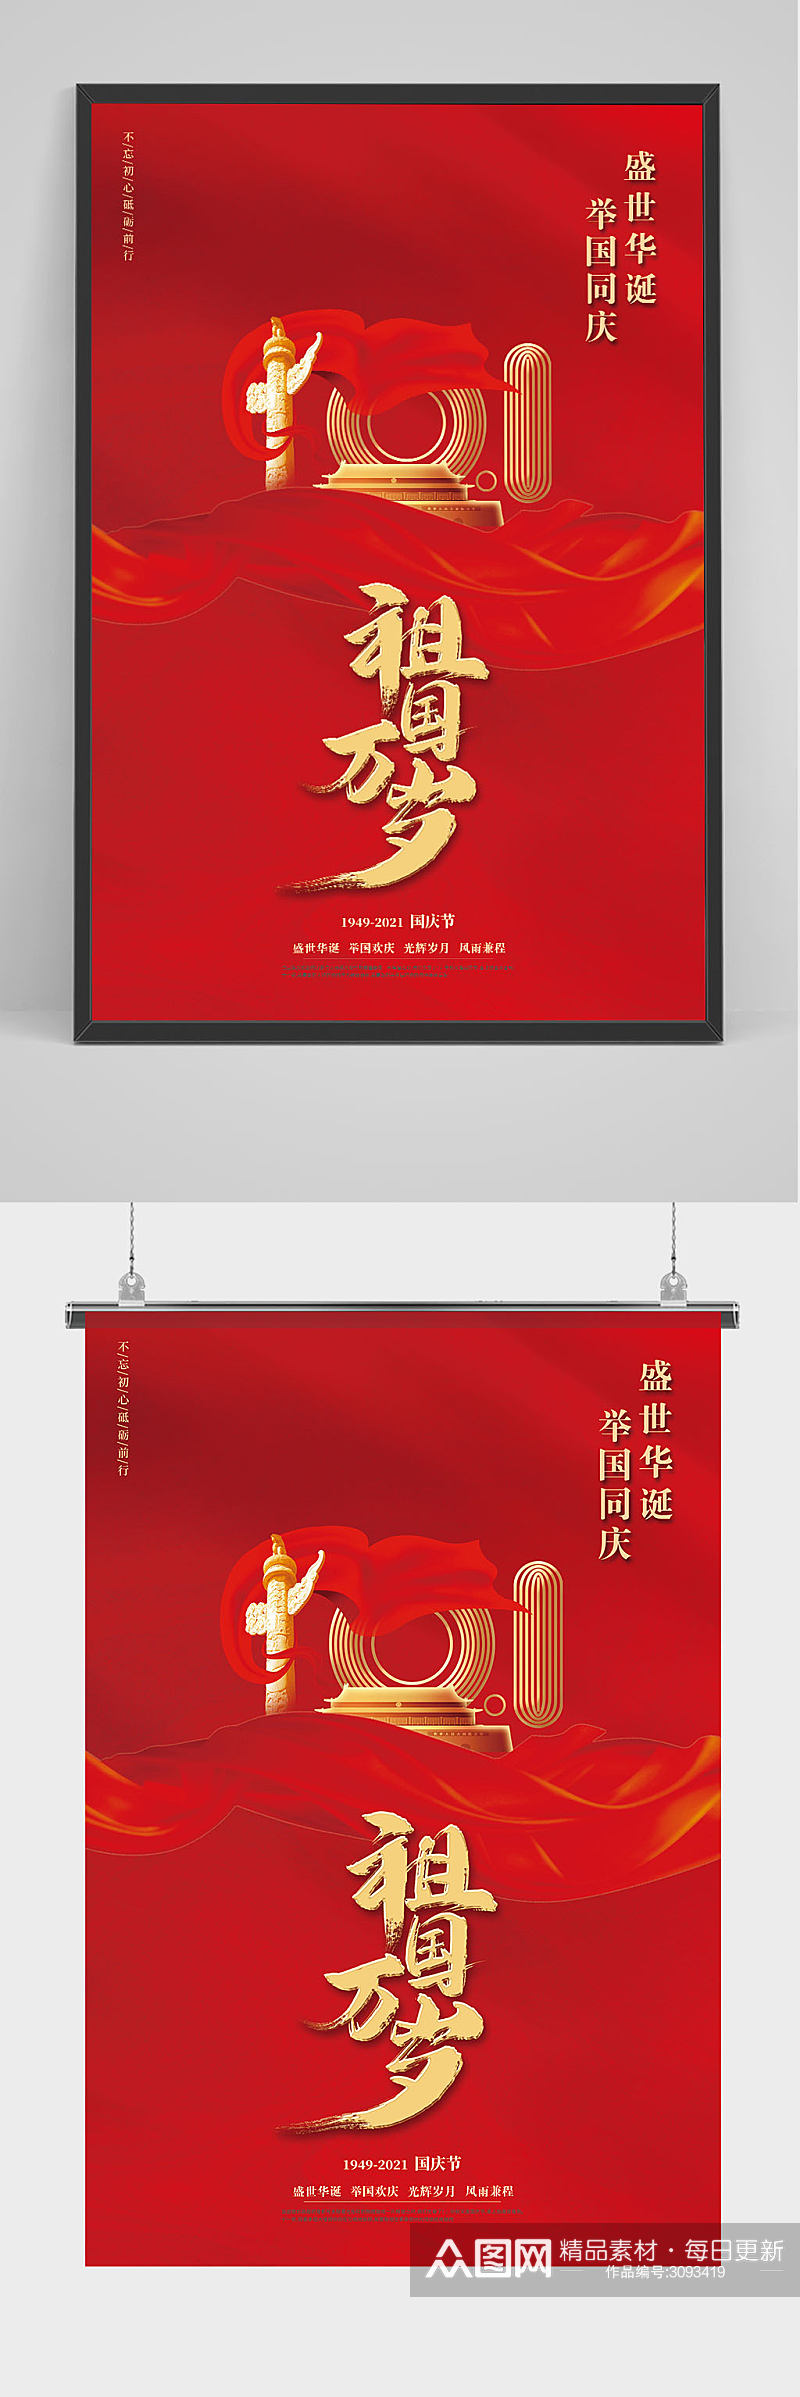 红色大气庆祝国庆节宣传海报素材